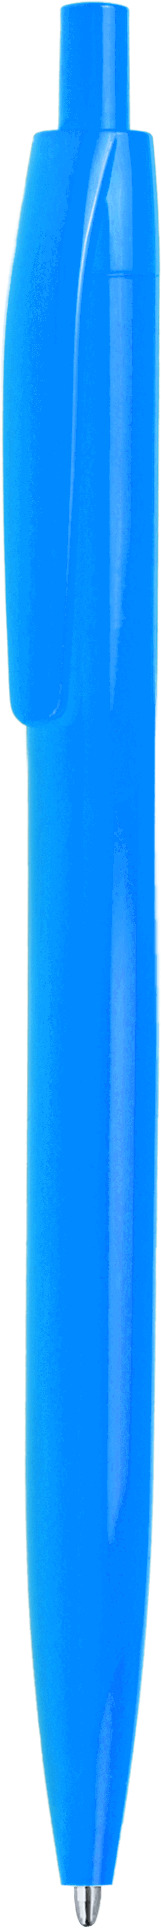 Ручка DAROM, однотонная, голубая